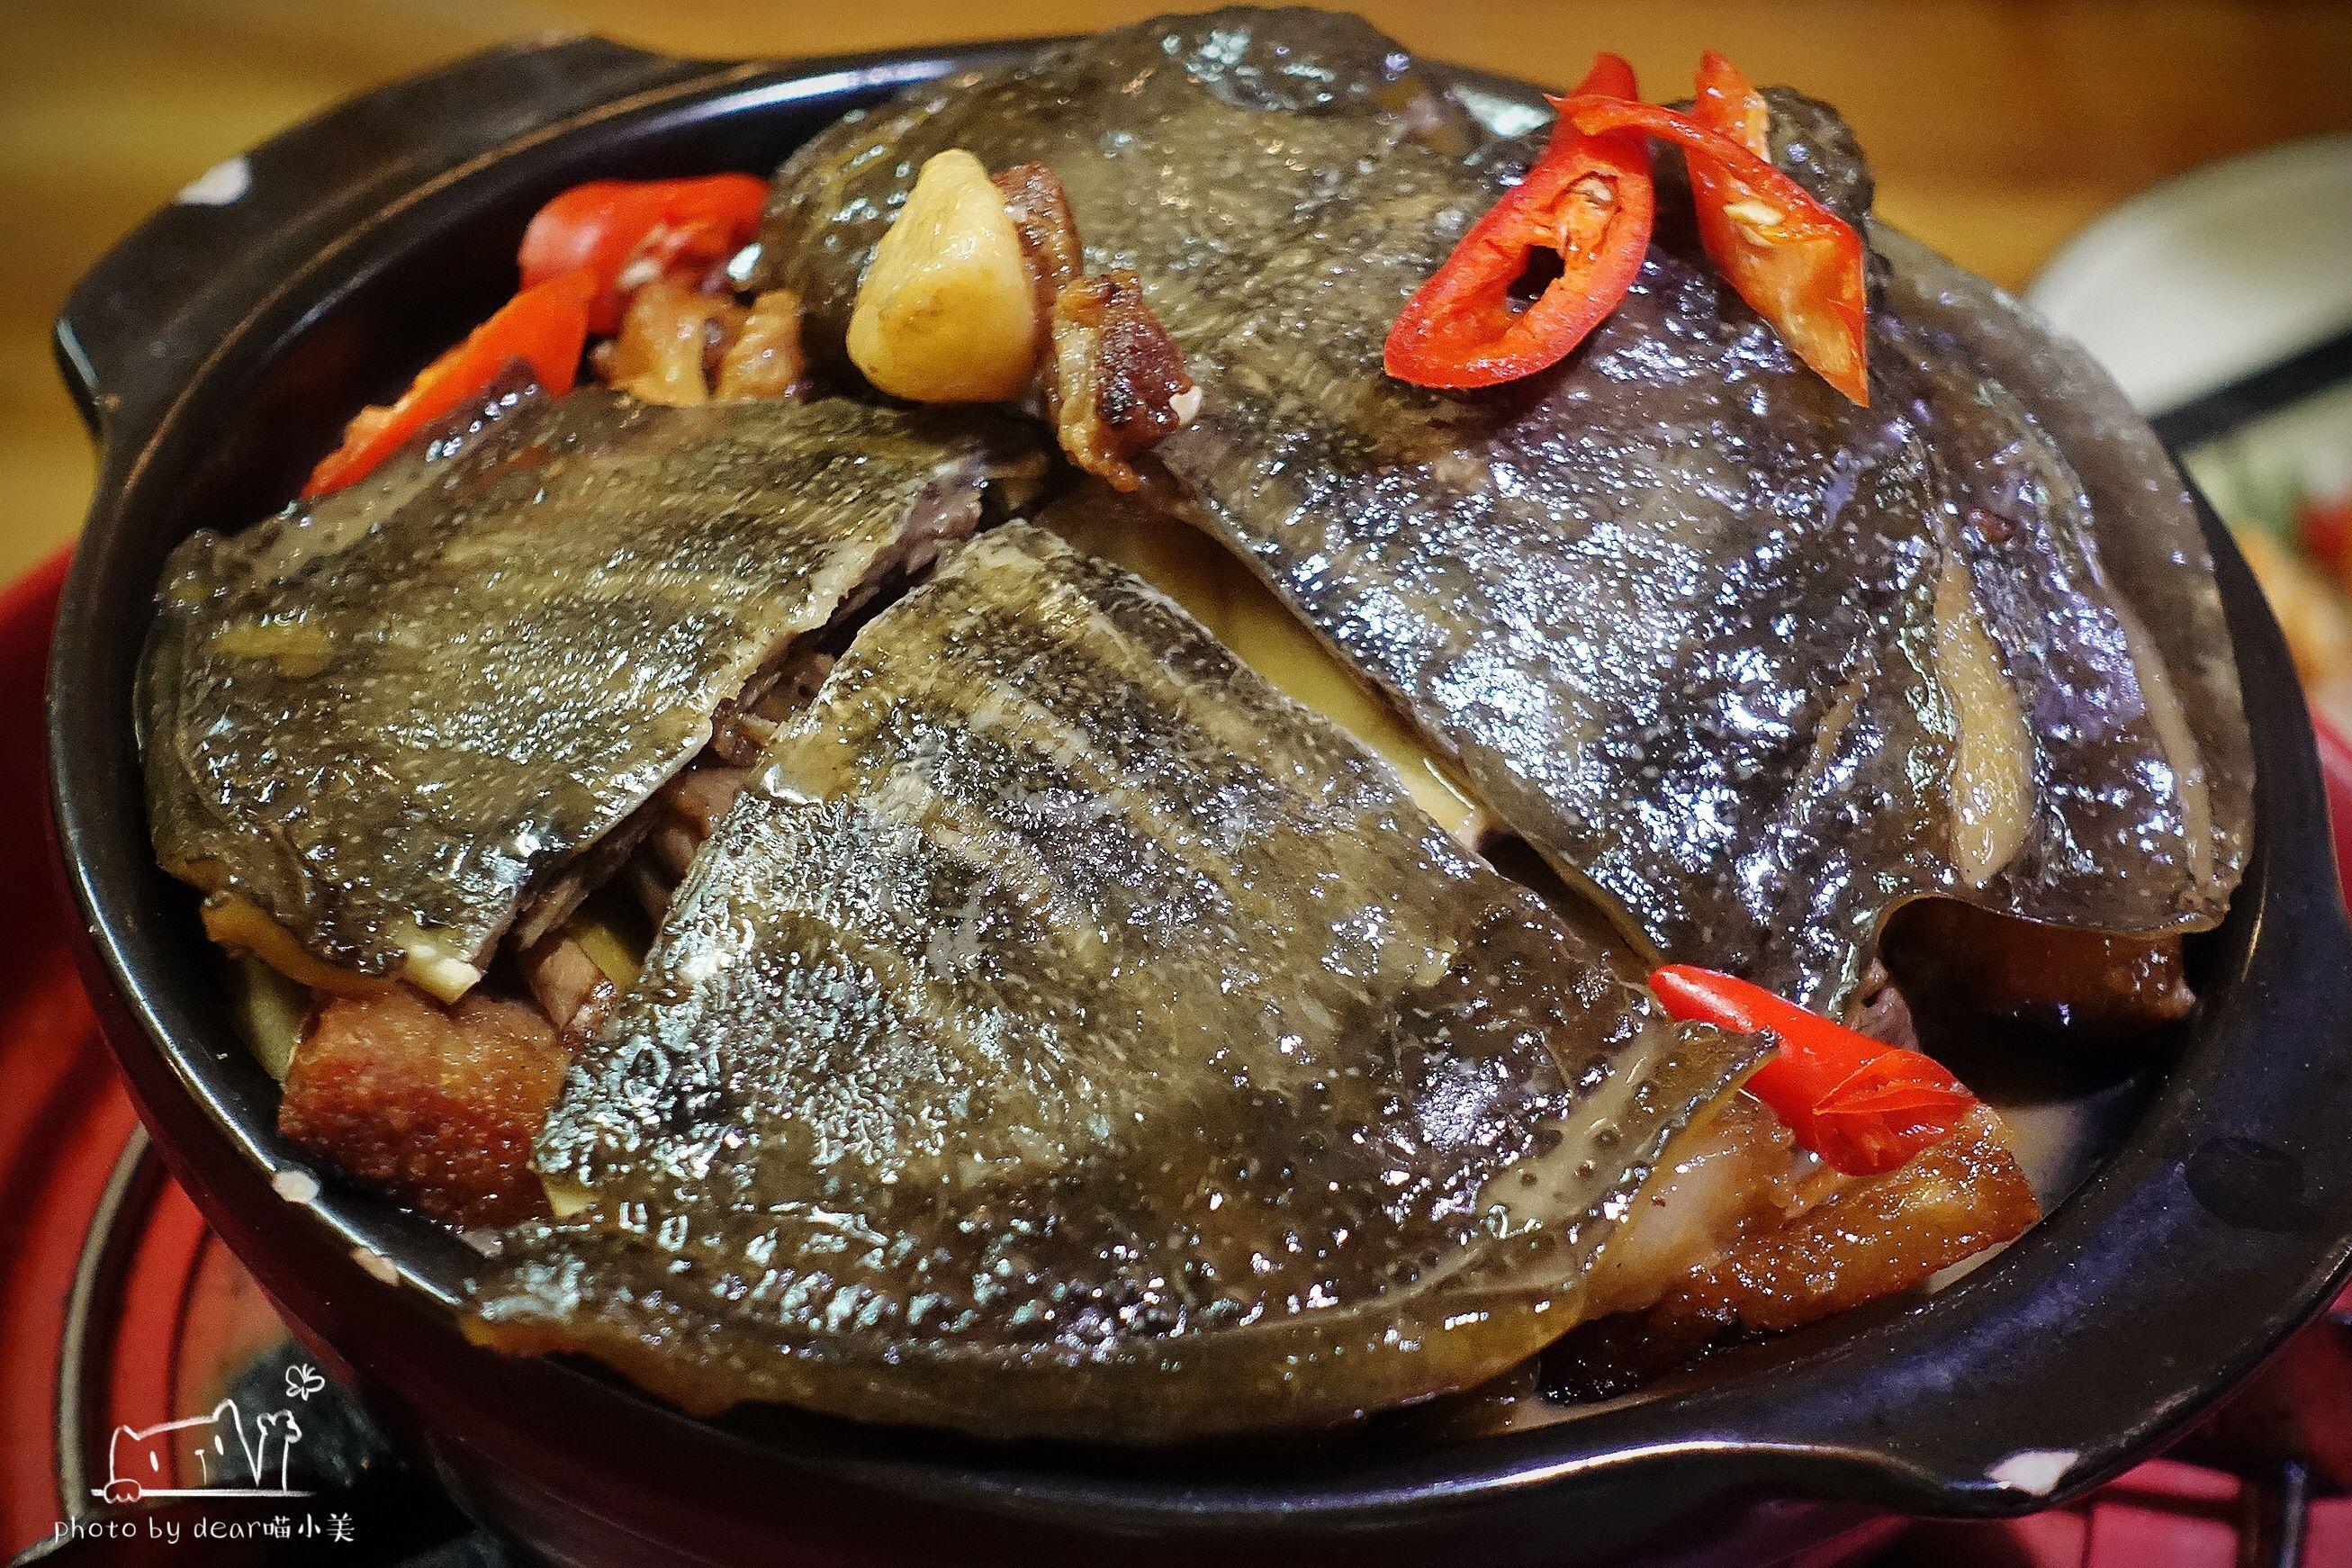 香油甲鱼煲,也是很滋补的一道菜,甲鱼炖得很够火候,满满的胶原蛋白很